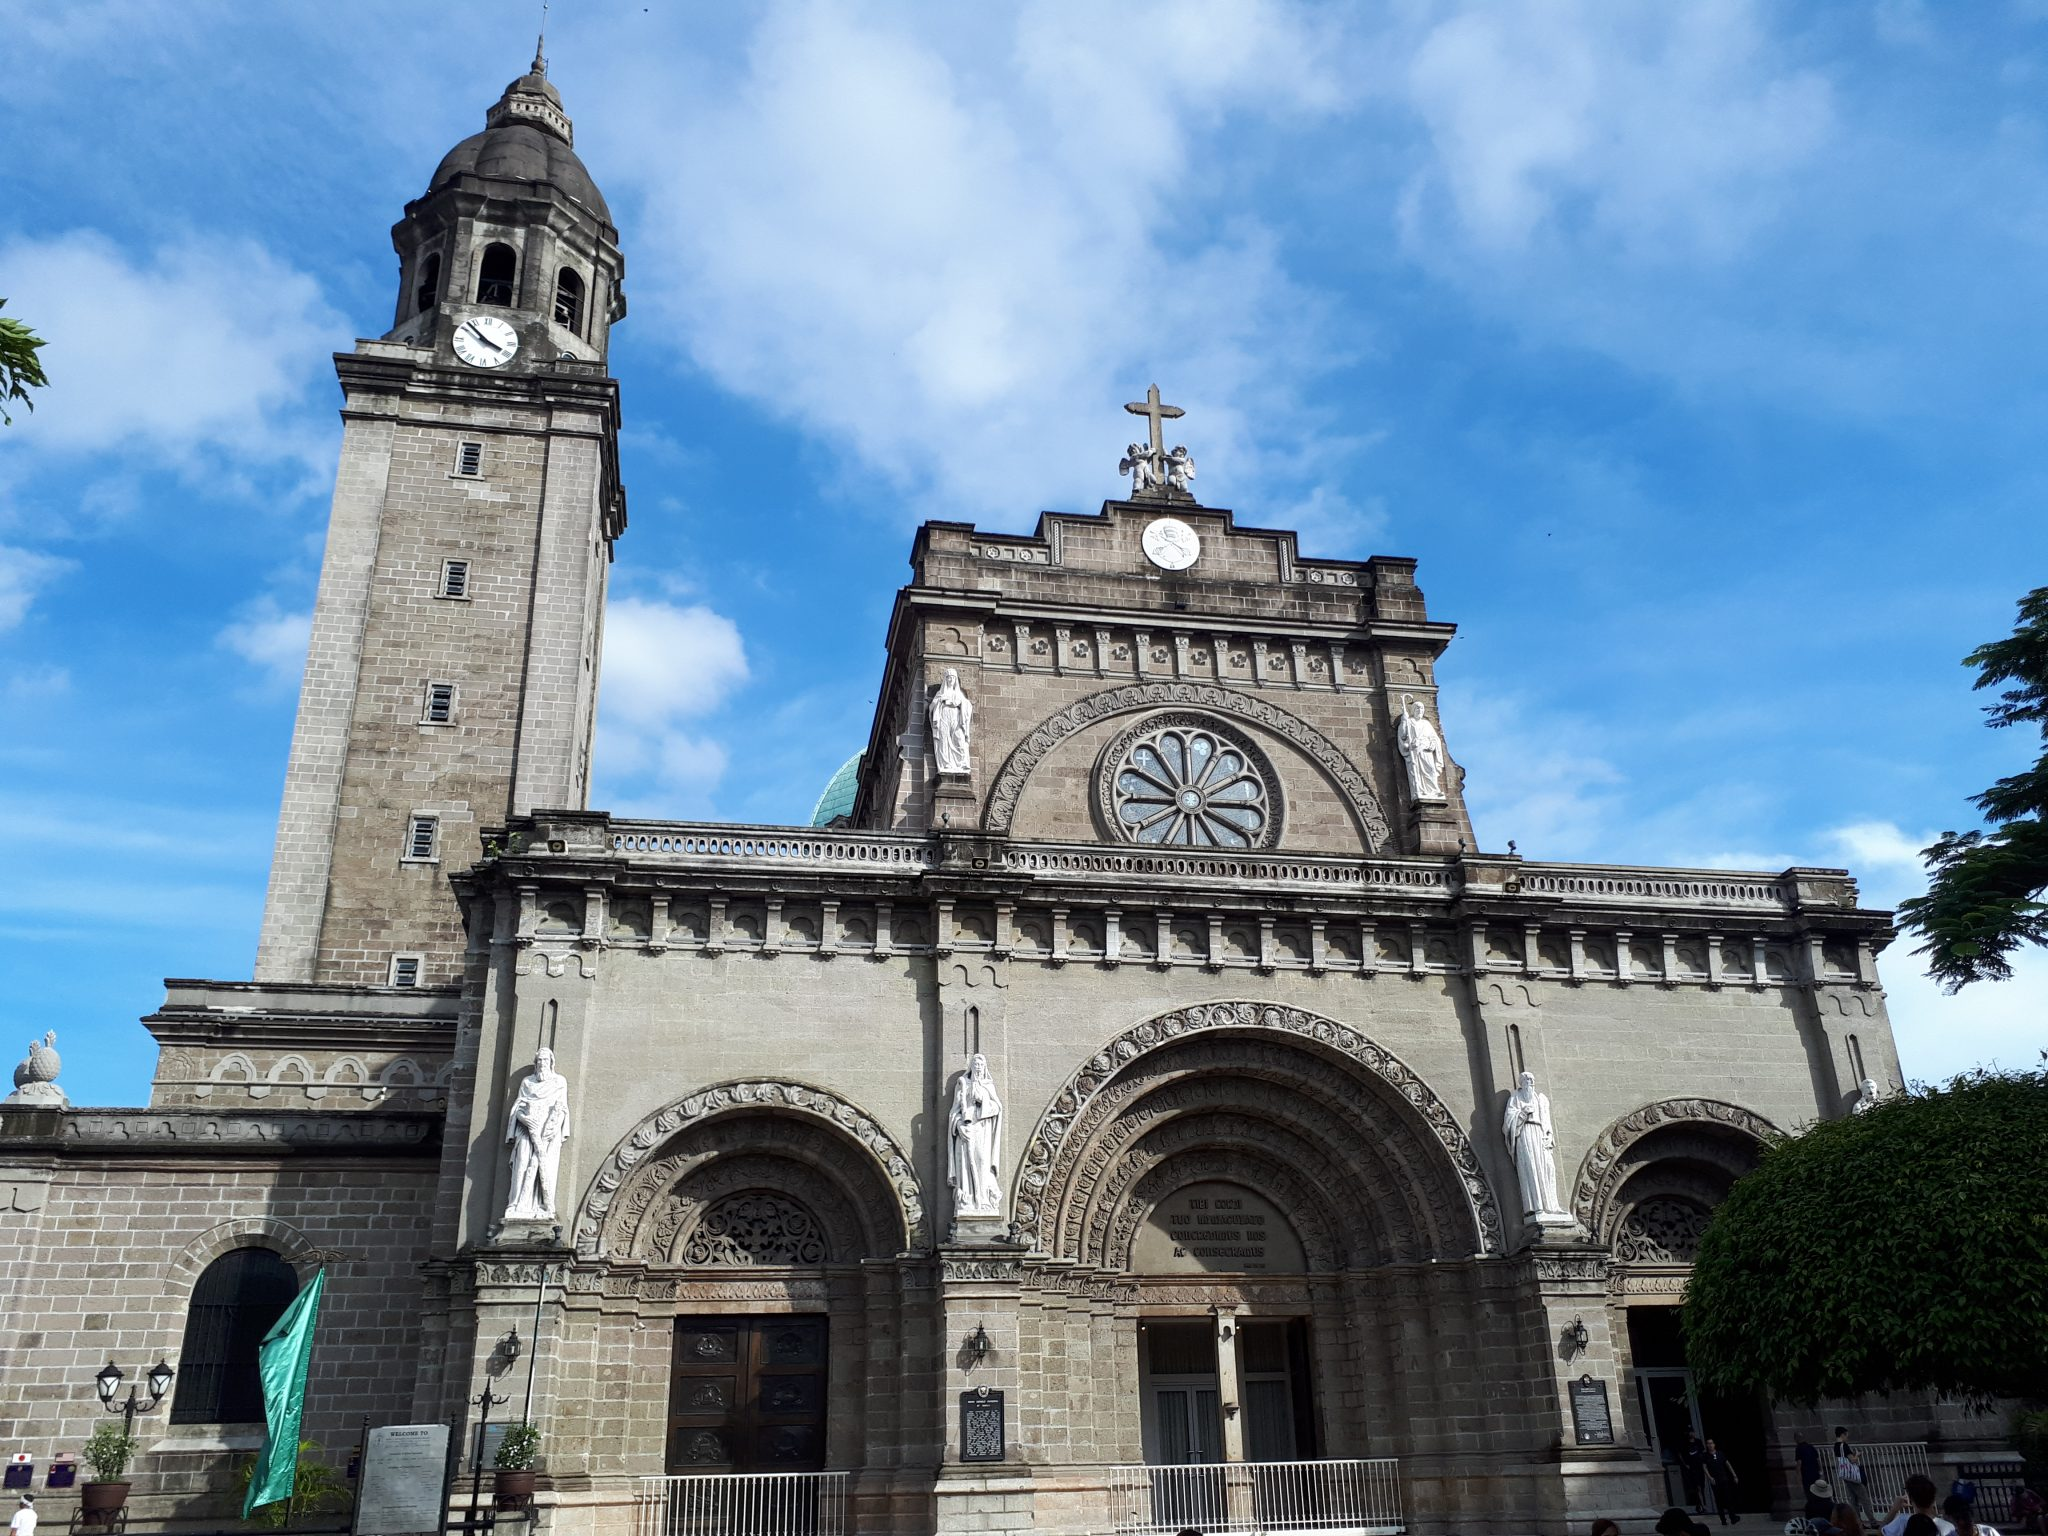 马尼拉大圣堂 manila cathedral第二天:马尼拉大圣堂,圣奥古斯丁教堂